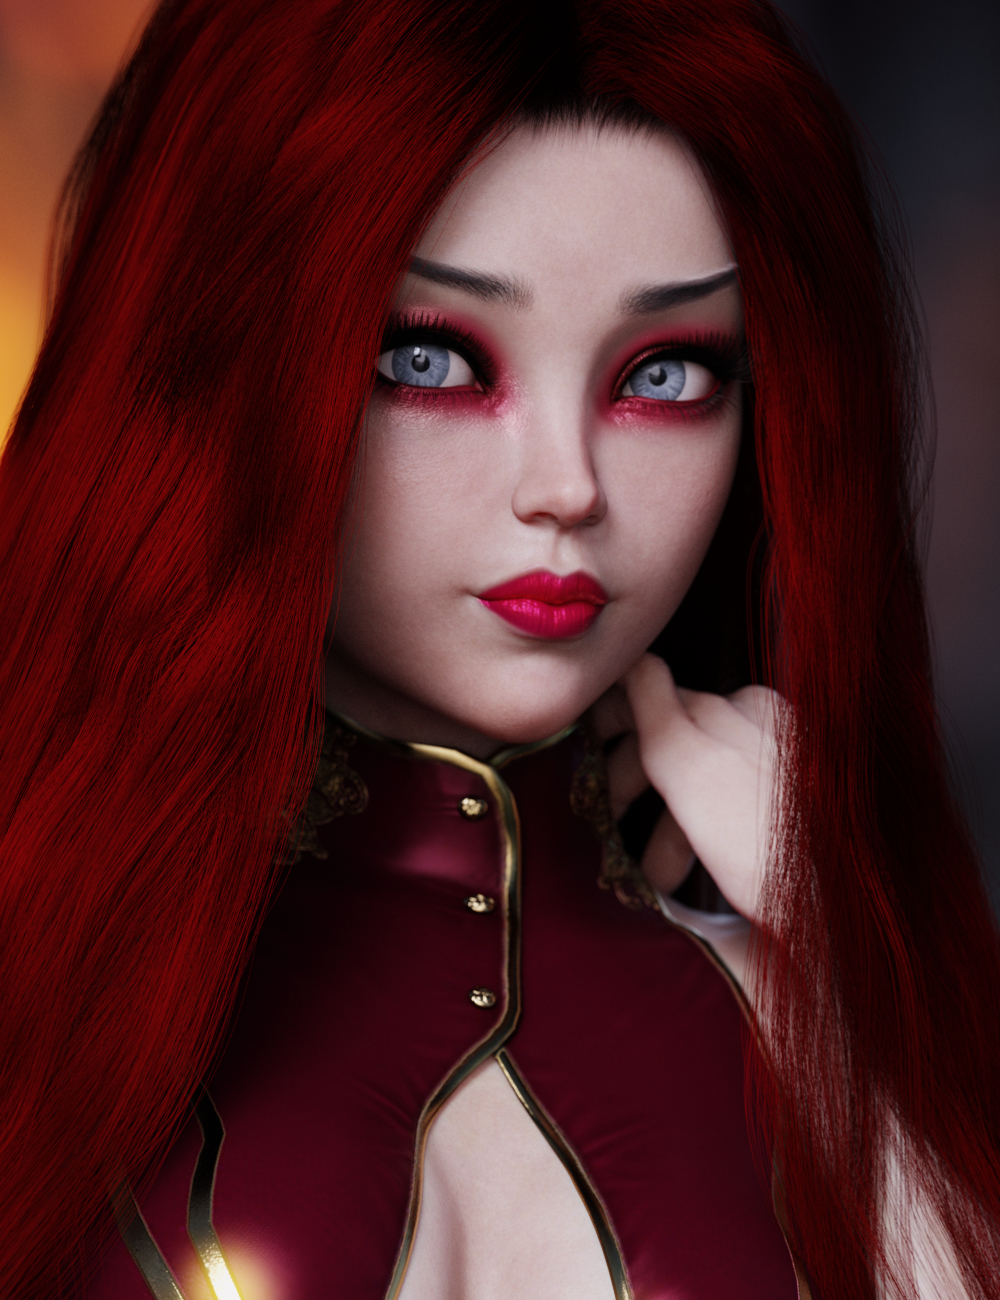 Zatsuky HD for Genesis 8.1 Female by: HM, 3D Models by Daz 3D